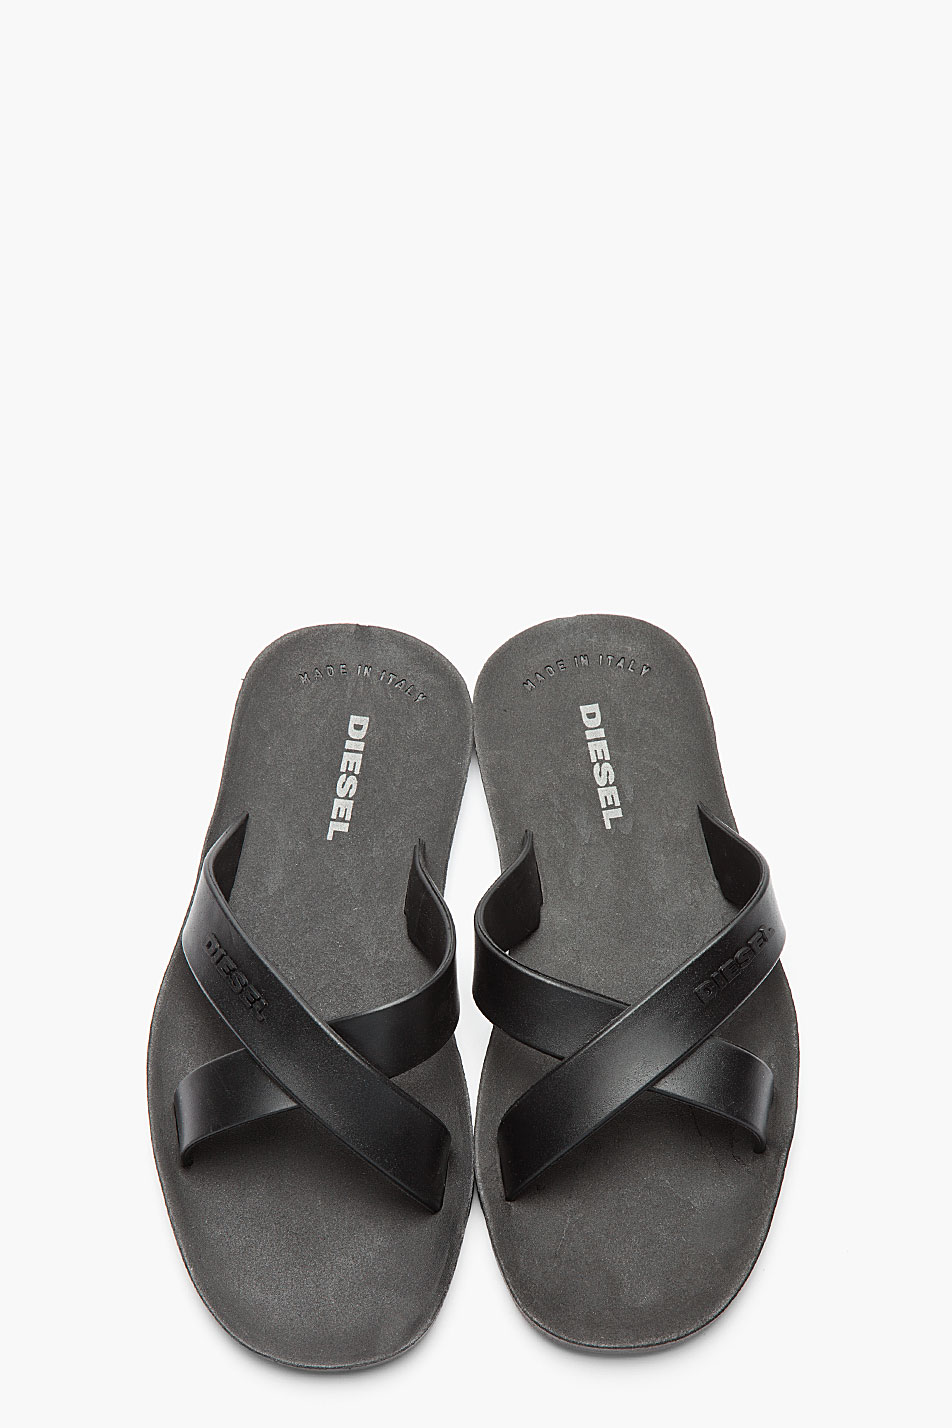 DIESEL Black Rubber Wash Sandals for Men - Lyst